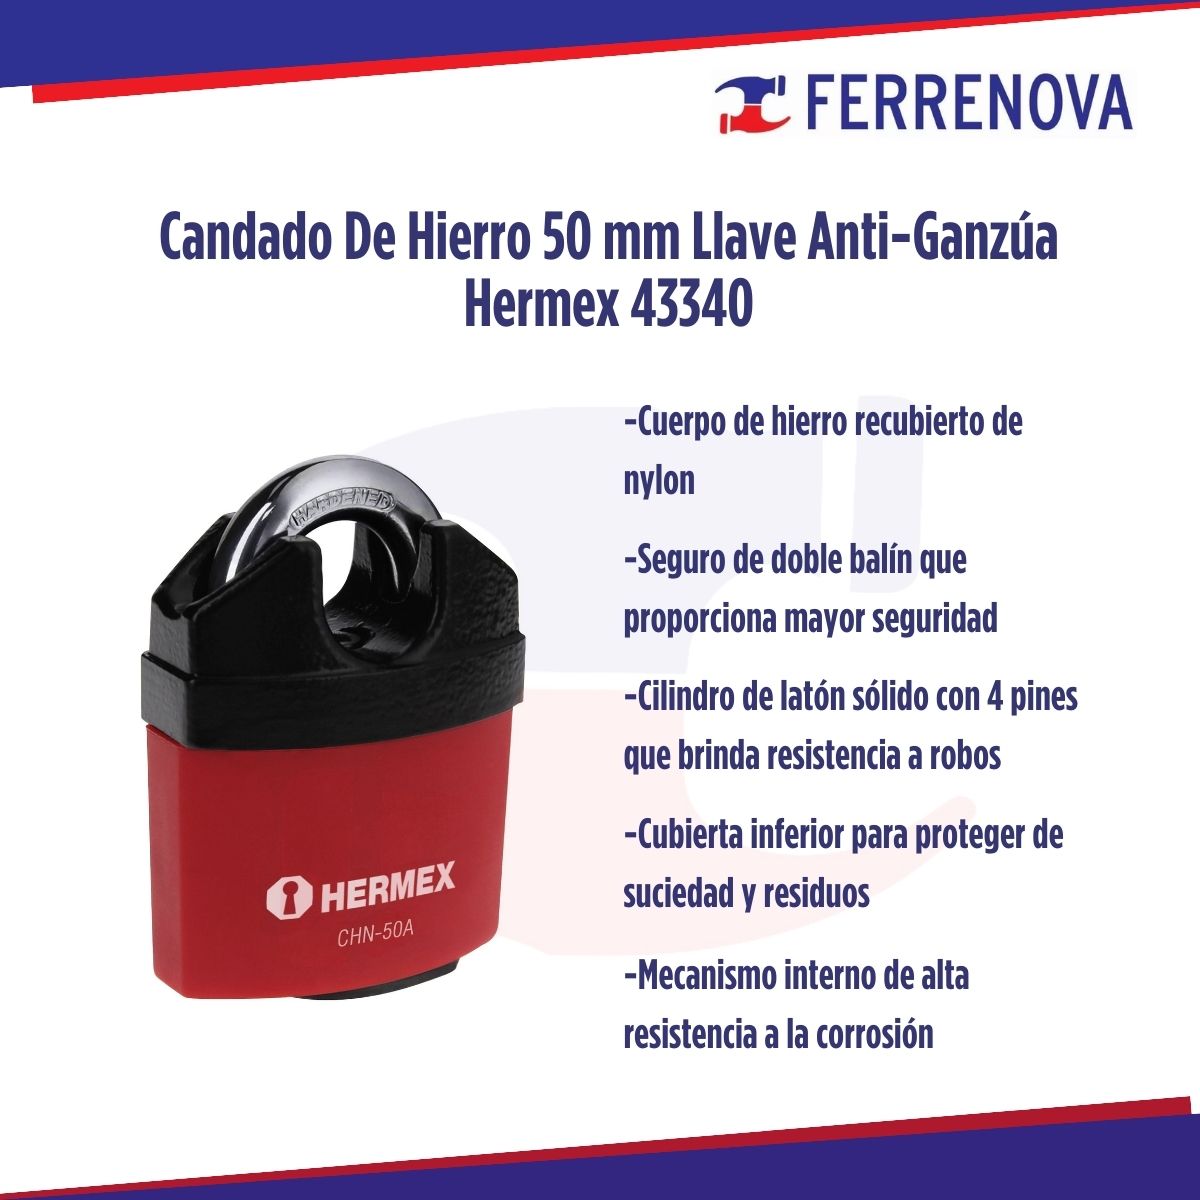 Candado De Hierro 50 mm Llave Anti-Ganzúa Hermex 43340